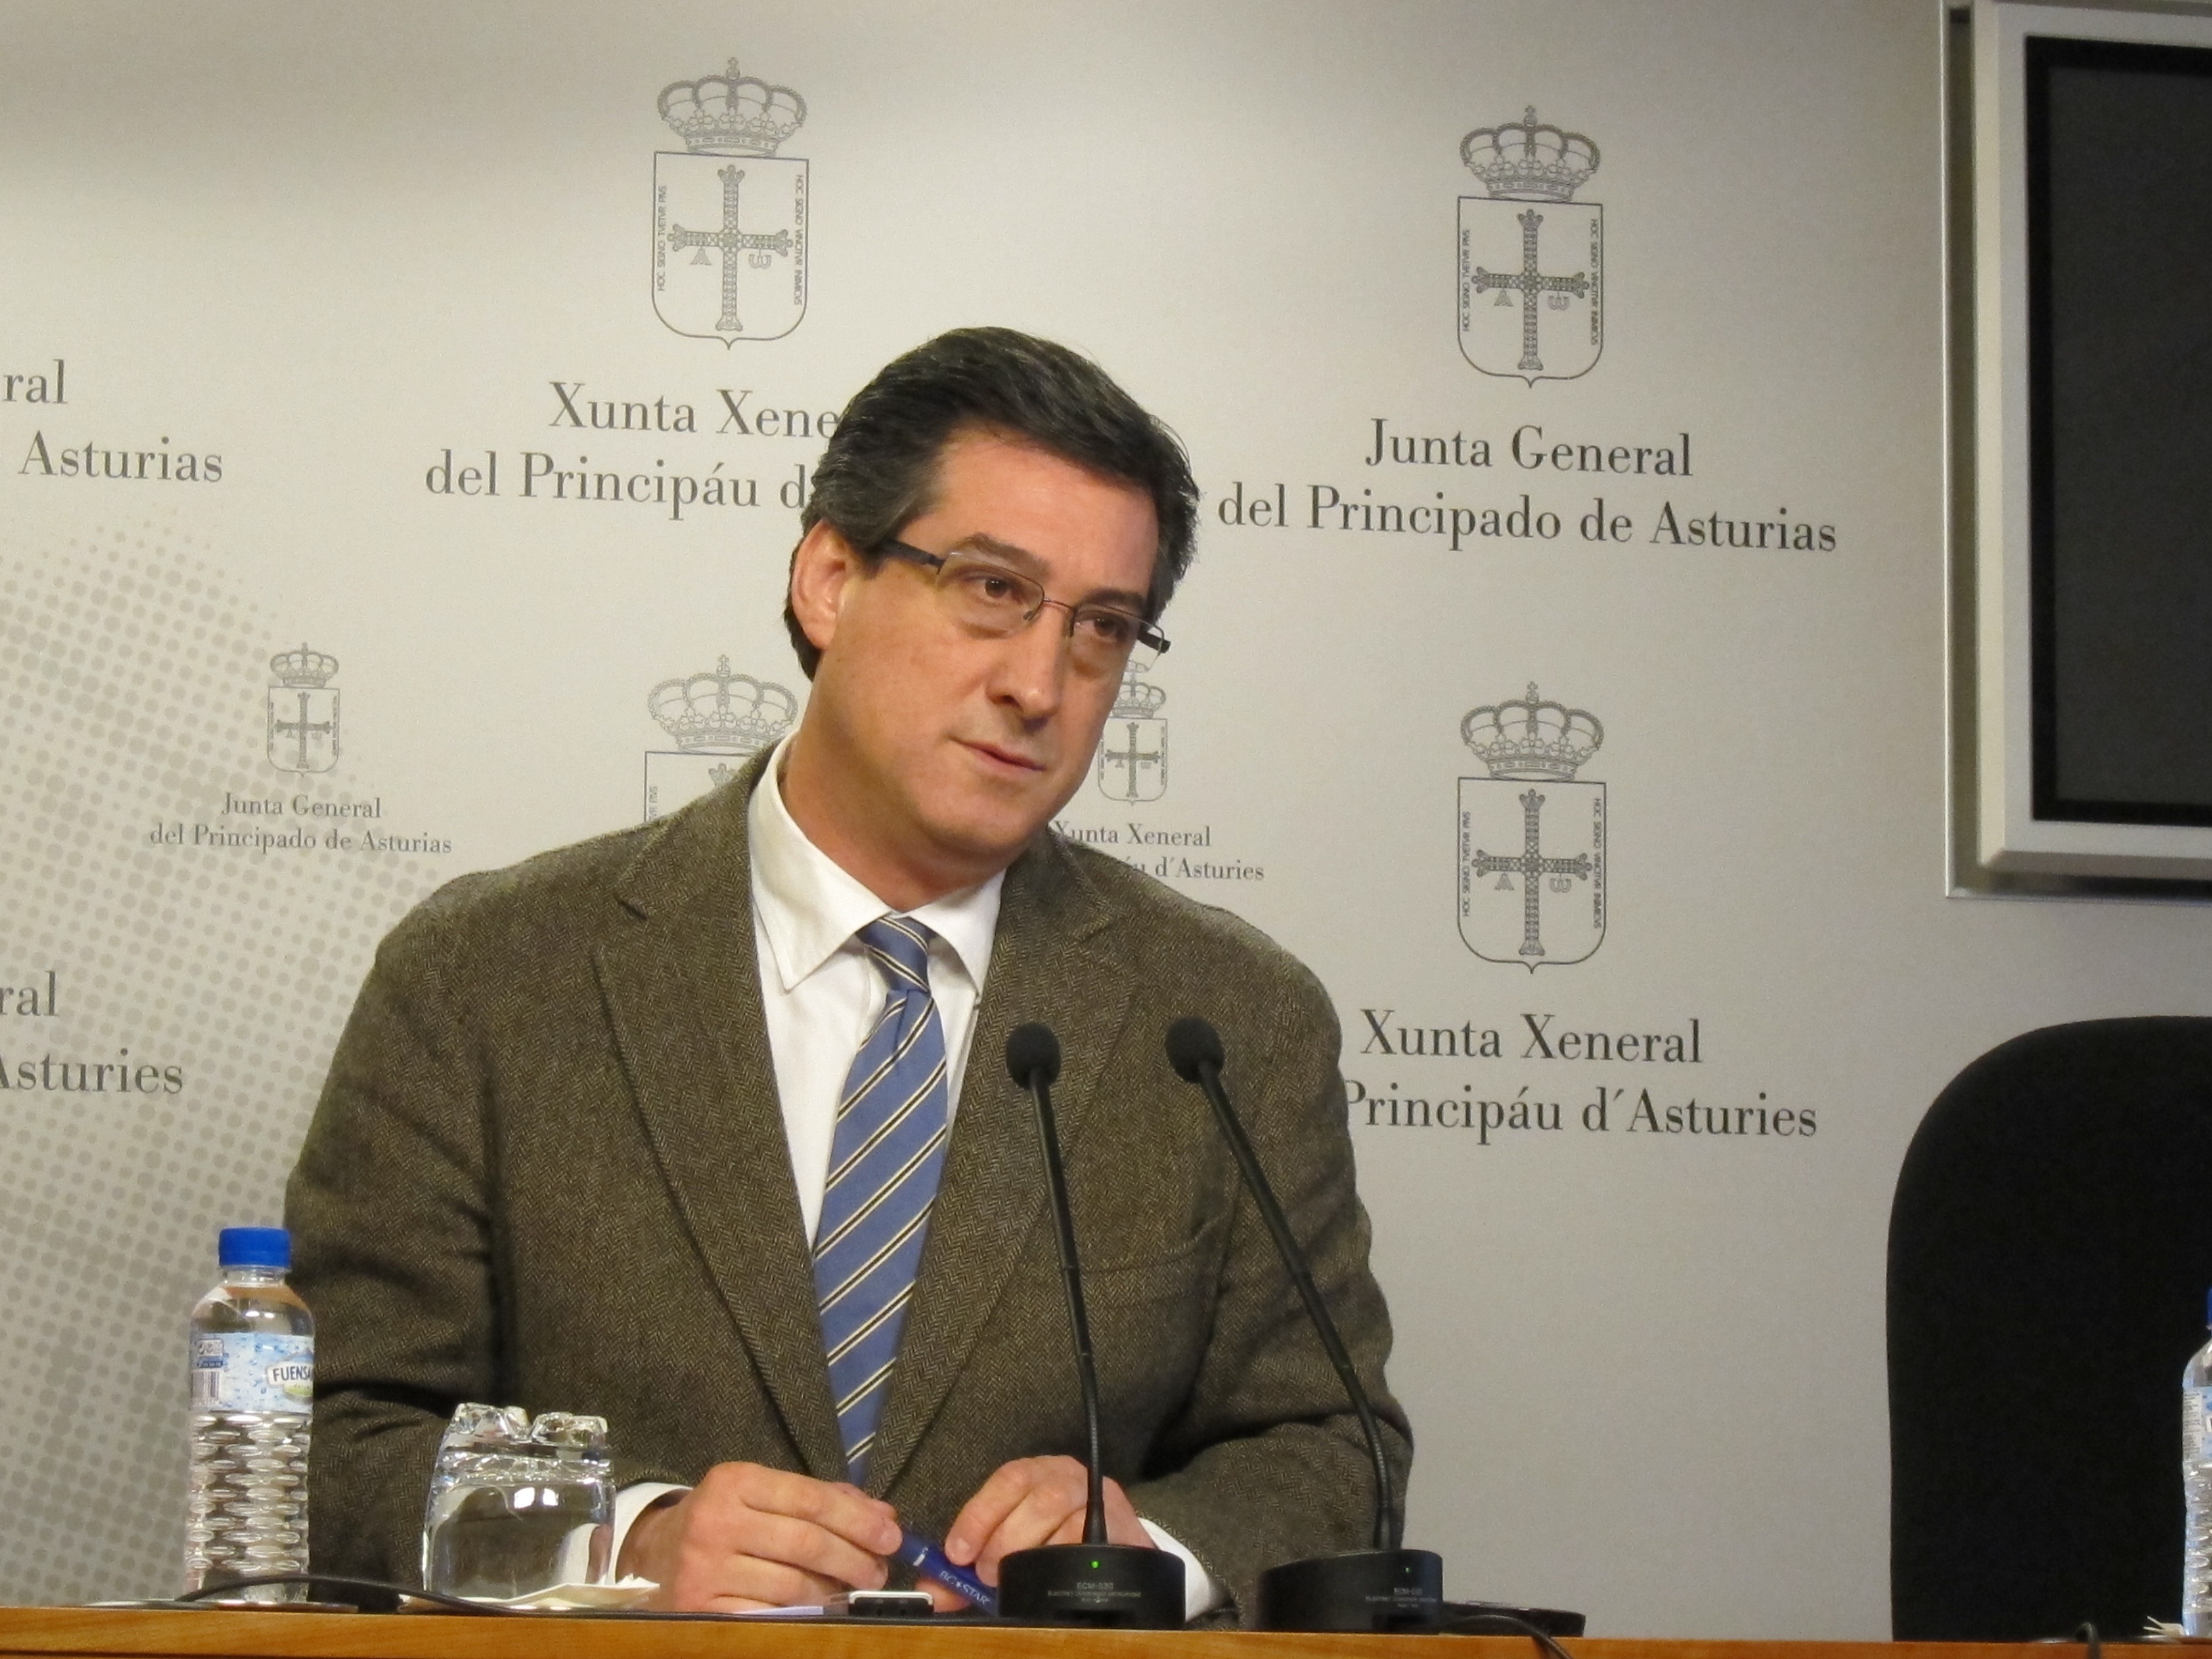 Los profesores asturianos serán autoridad pública a iniciativa de UPyD